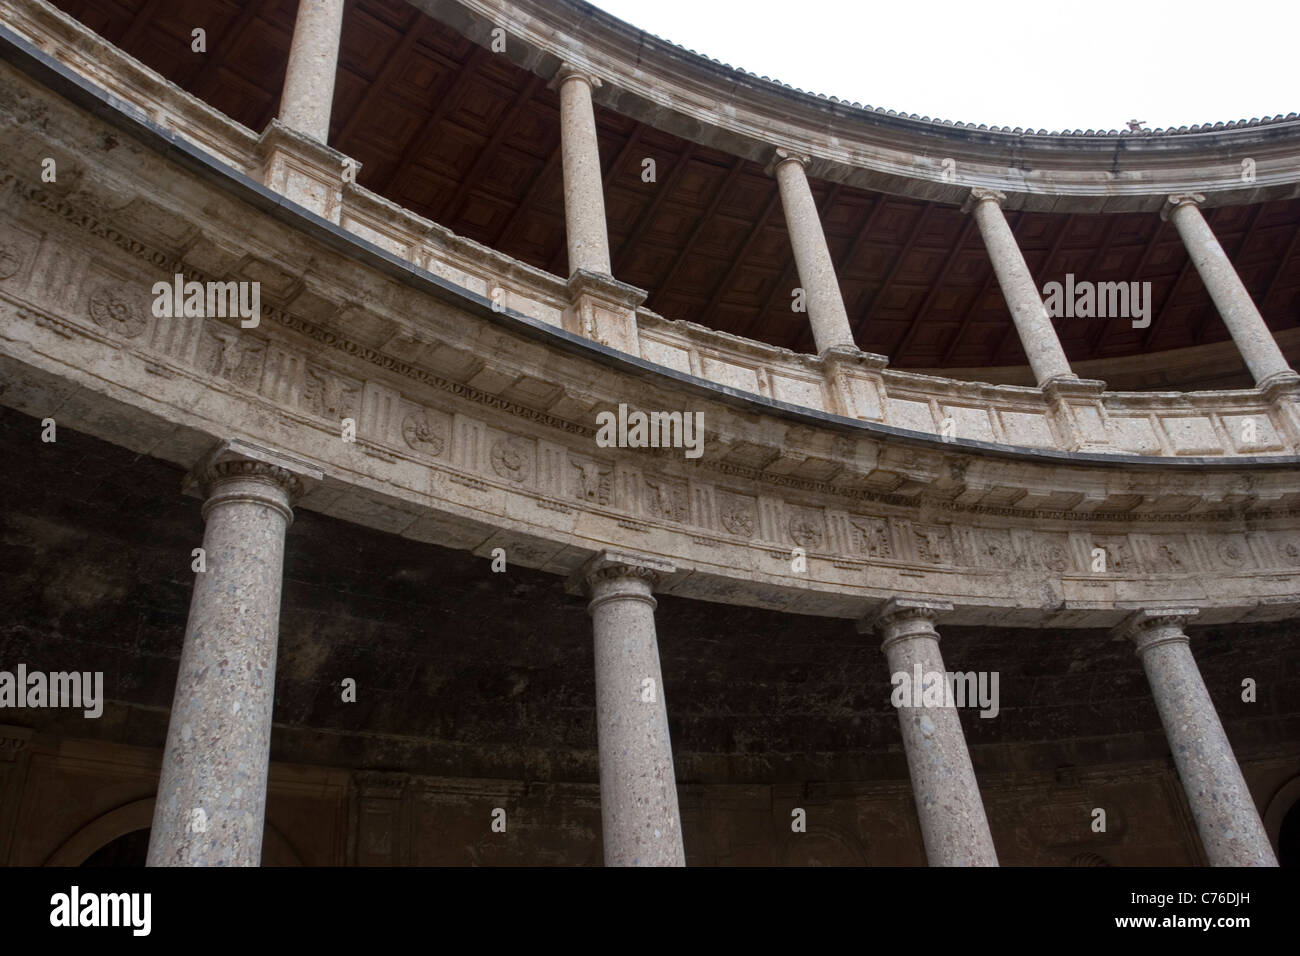 Säulen im Palast von Charles V, Renaissance-Gebäude in der Alhambra (Granada, Spanien). Stockfoto